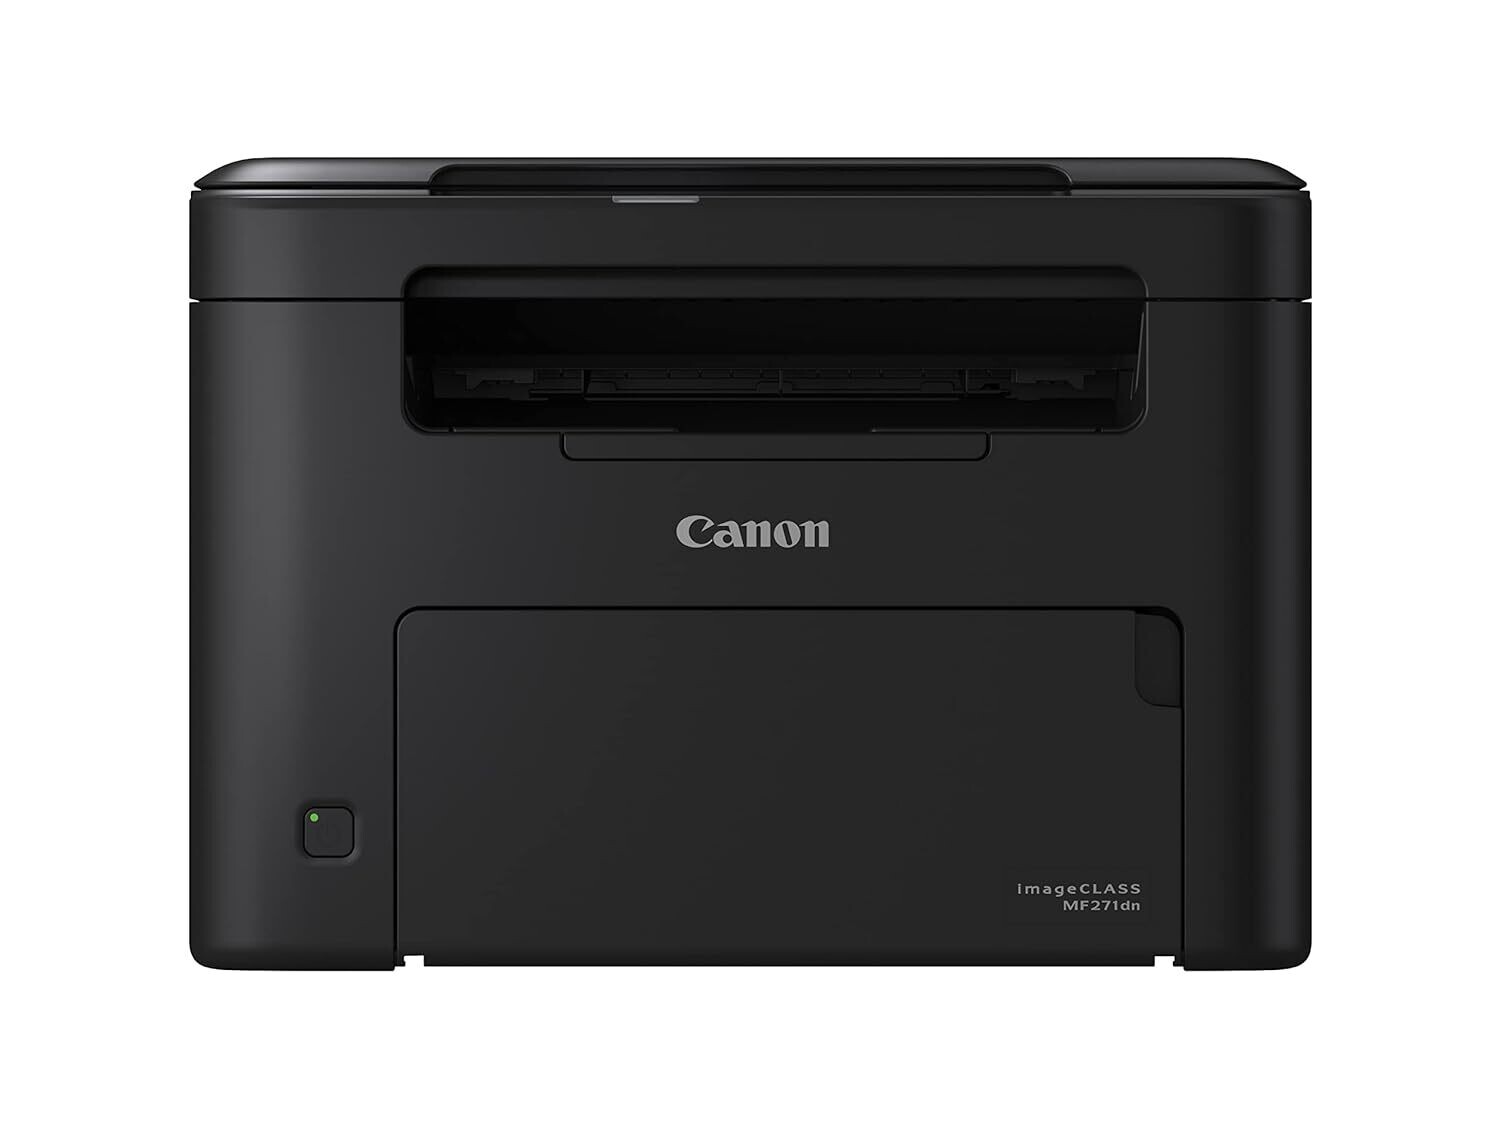 Canon imageClass MF271dn All in One Monochrome Printer